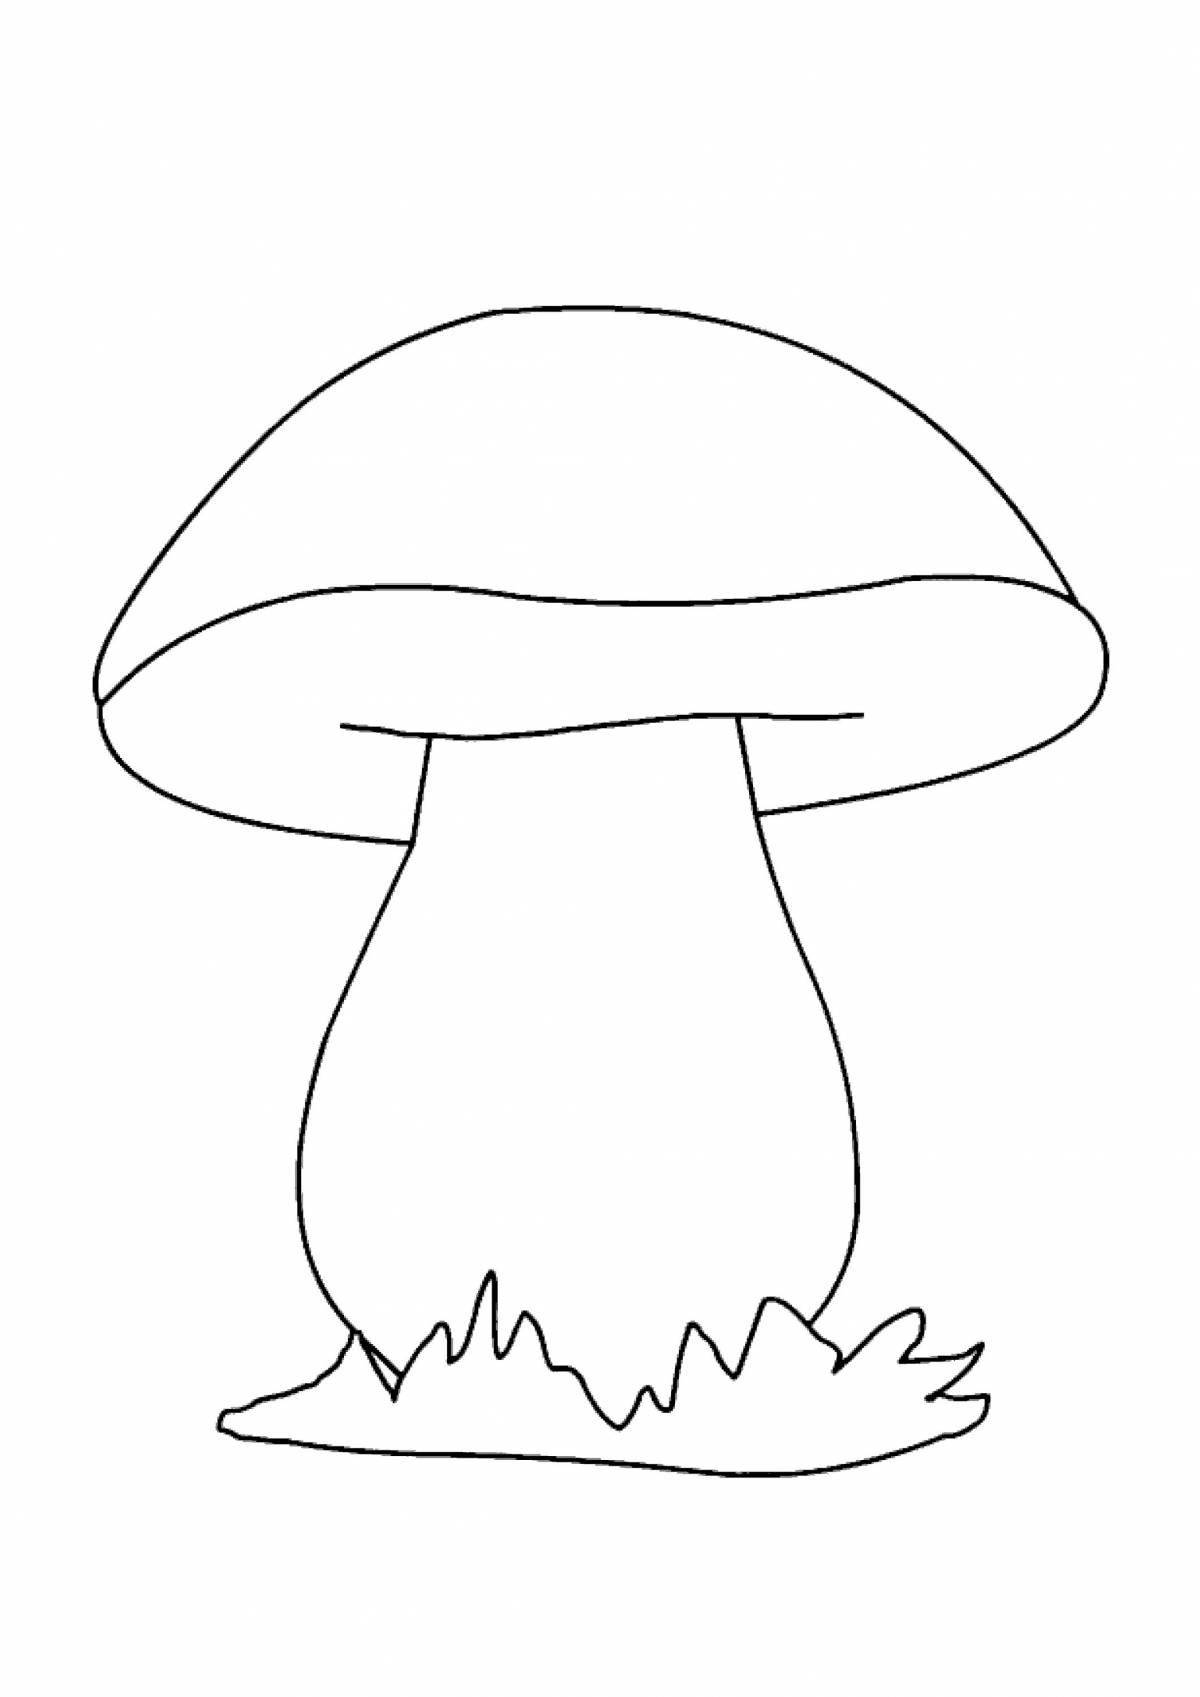 Изысканная раскраска грибов для детей 3-4 лет